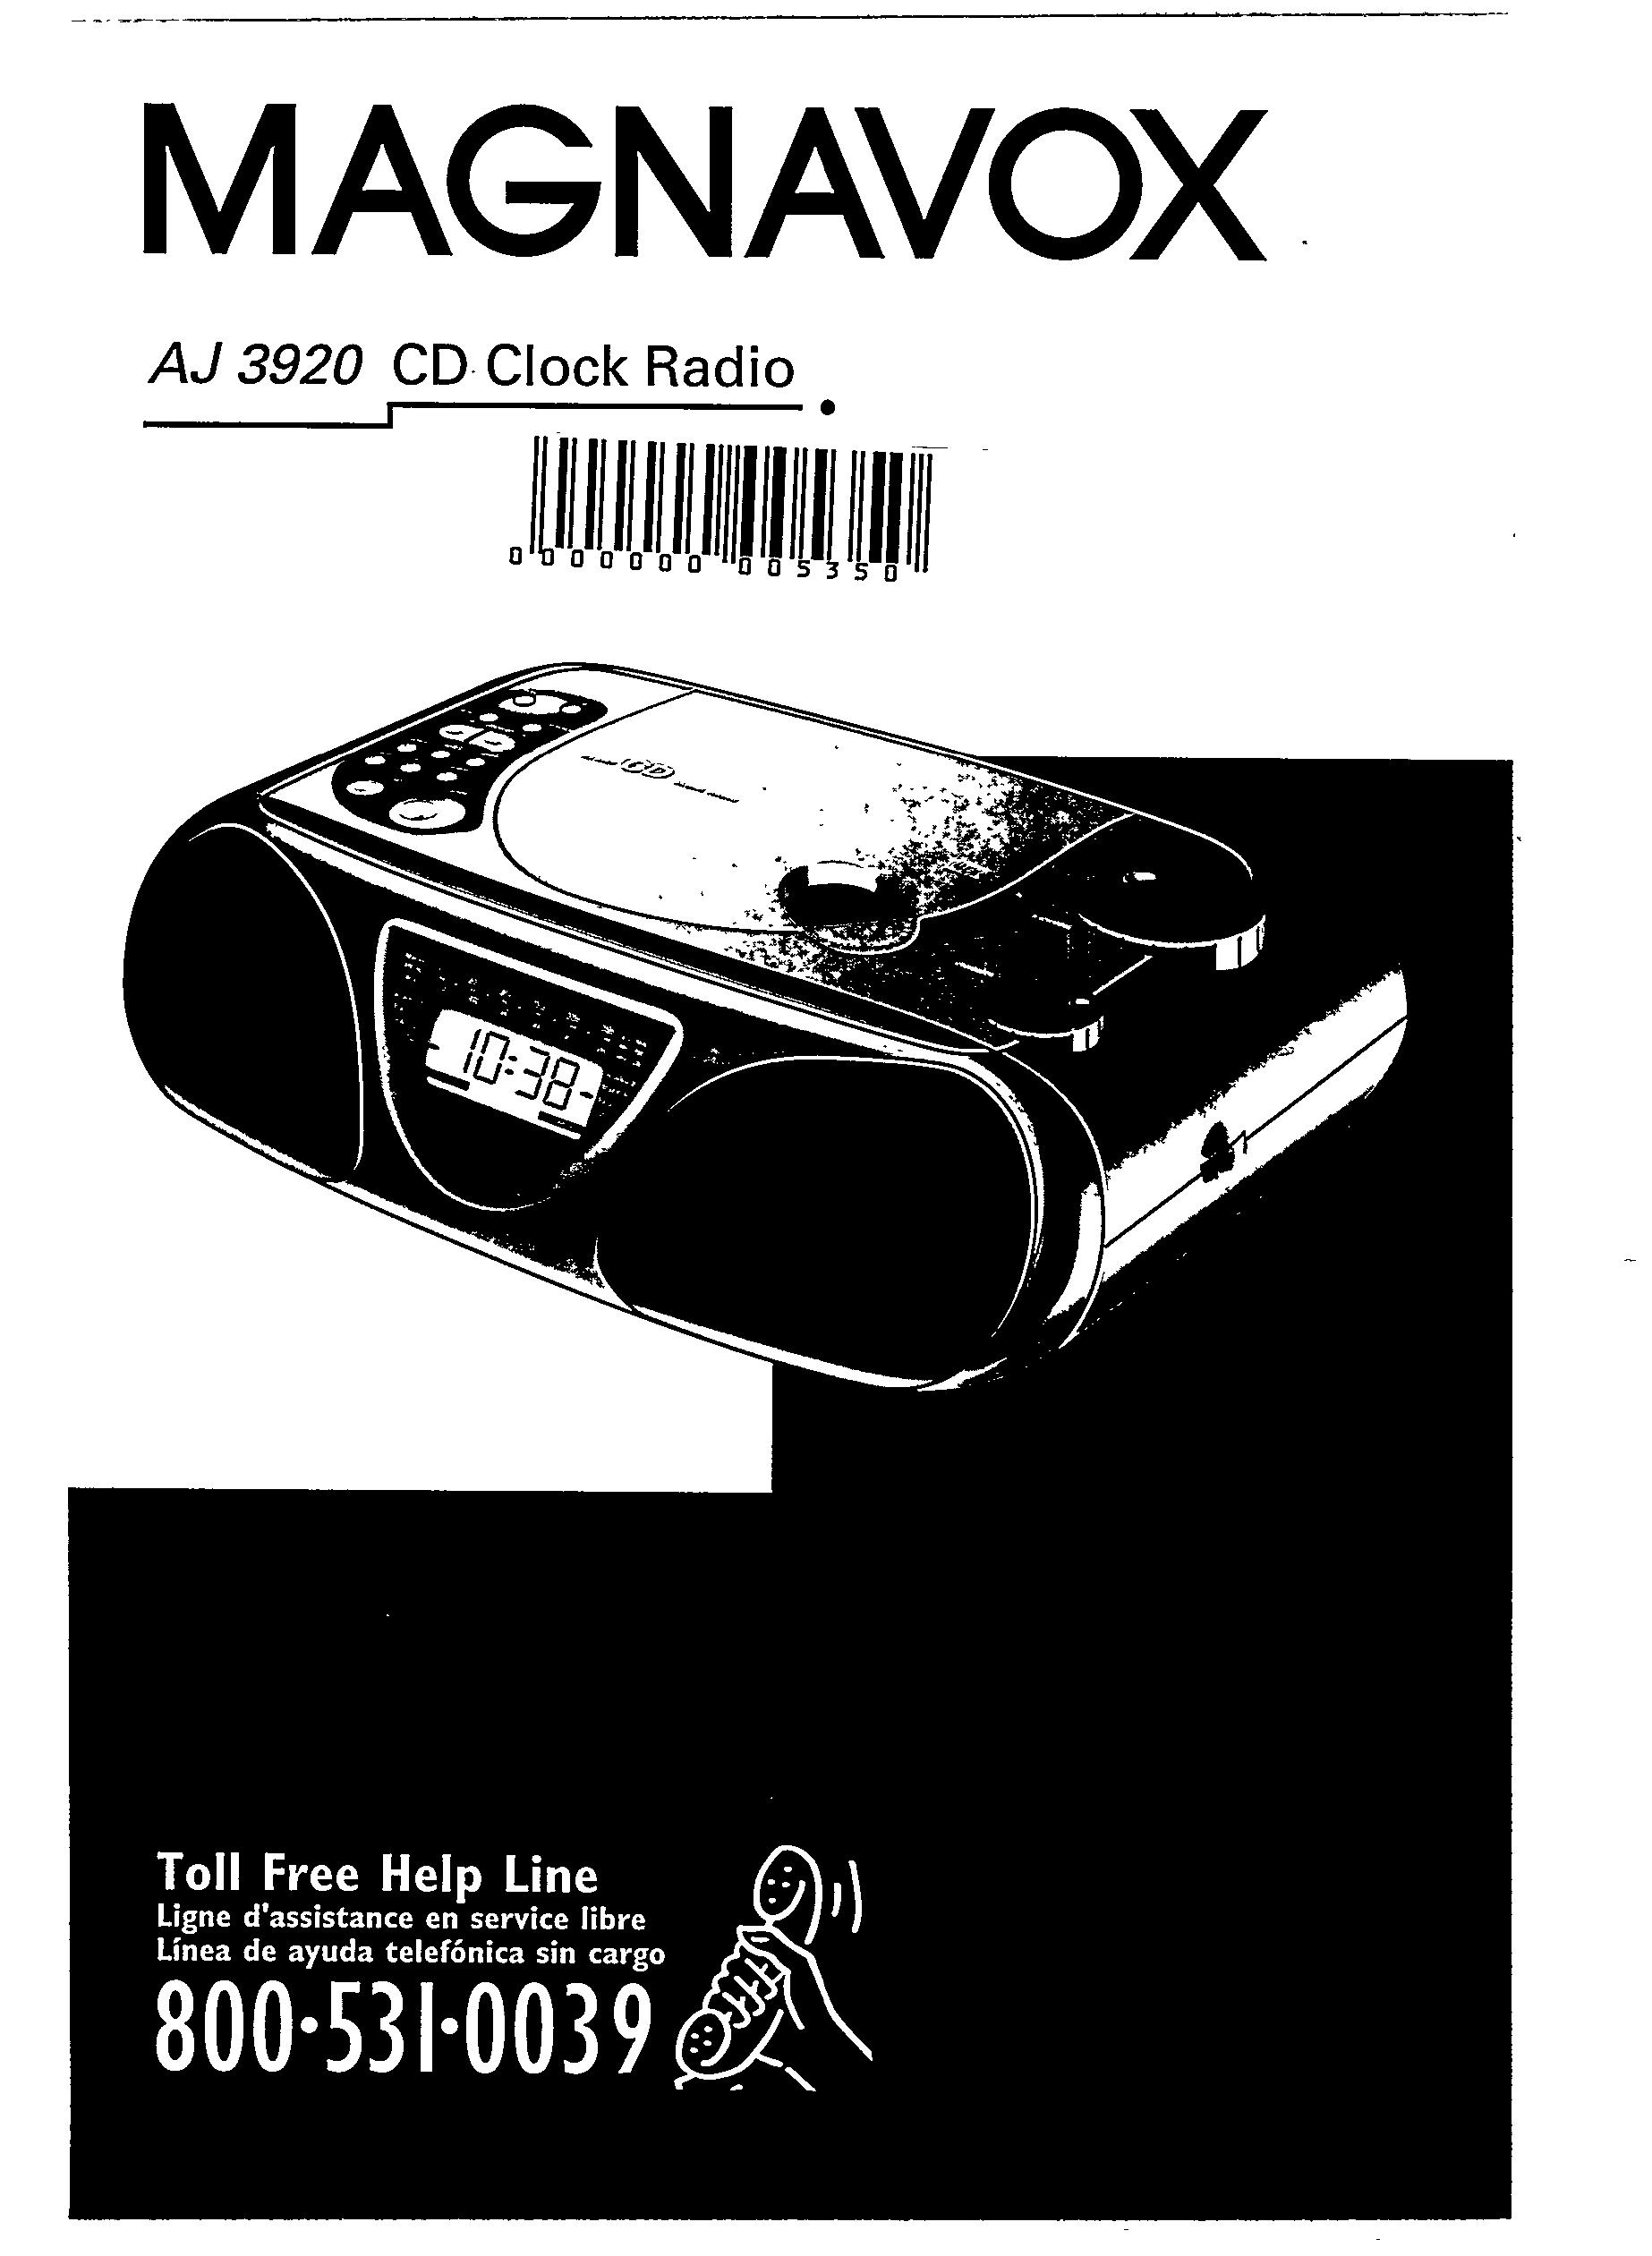 Magnavox aj3920 Clock Radio User Manual